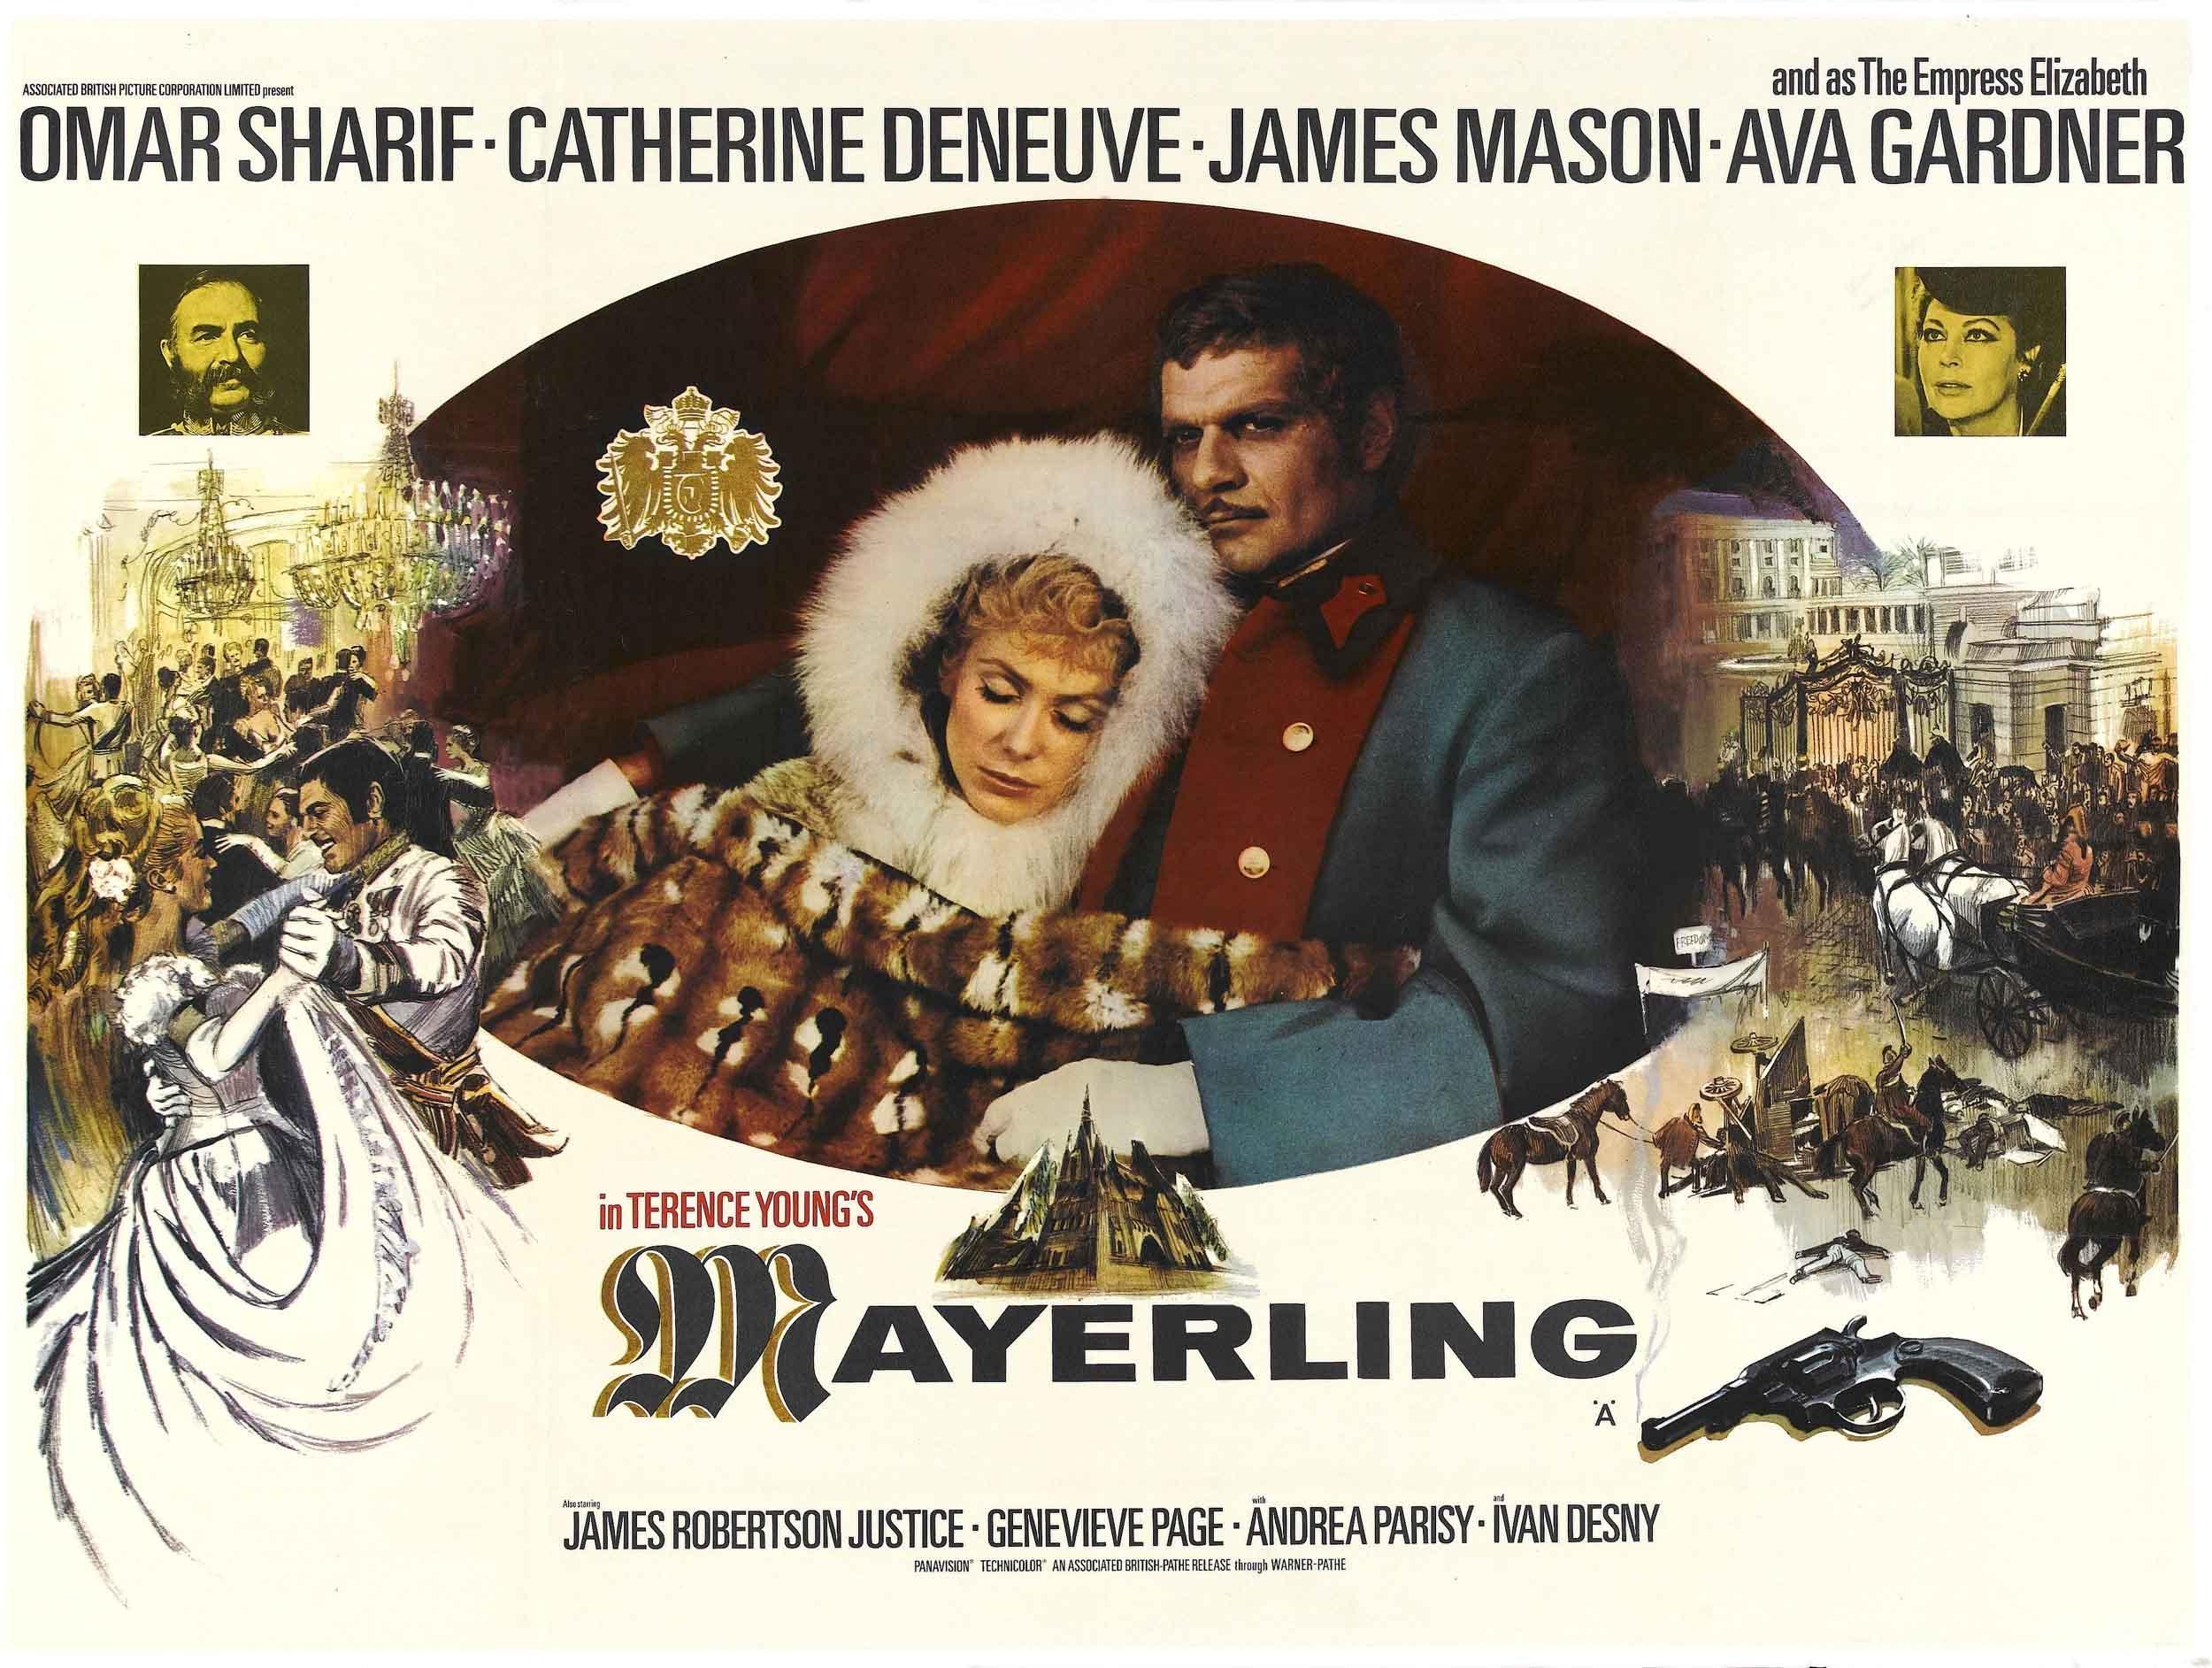 Постер фильма Майерлинг | Mayerling